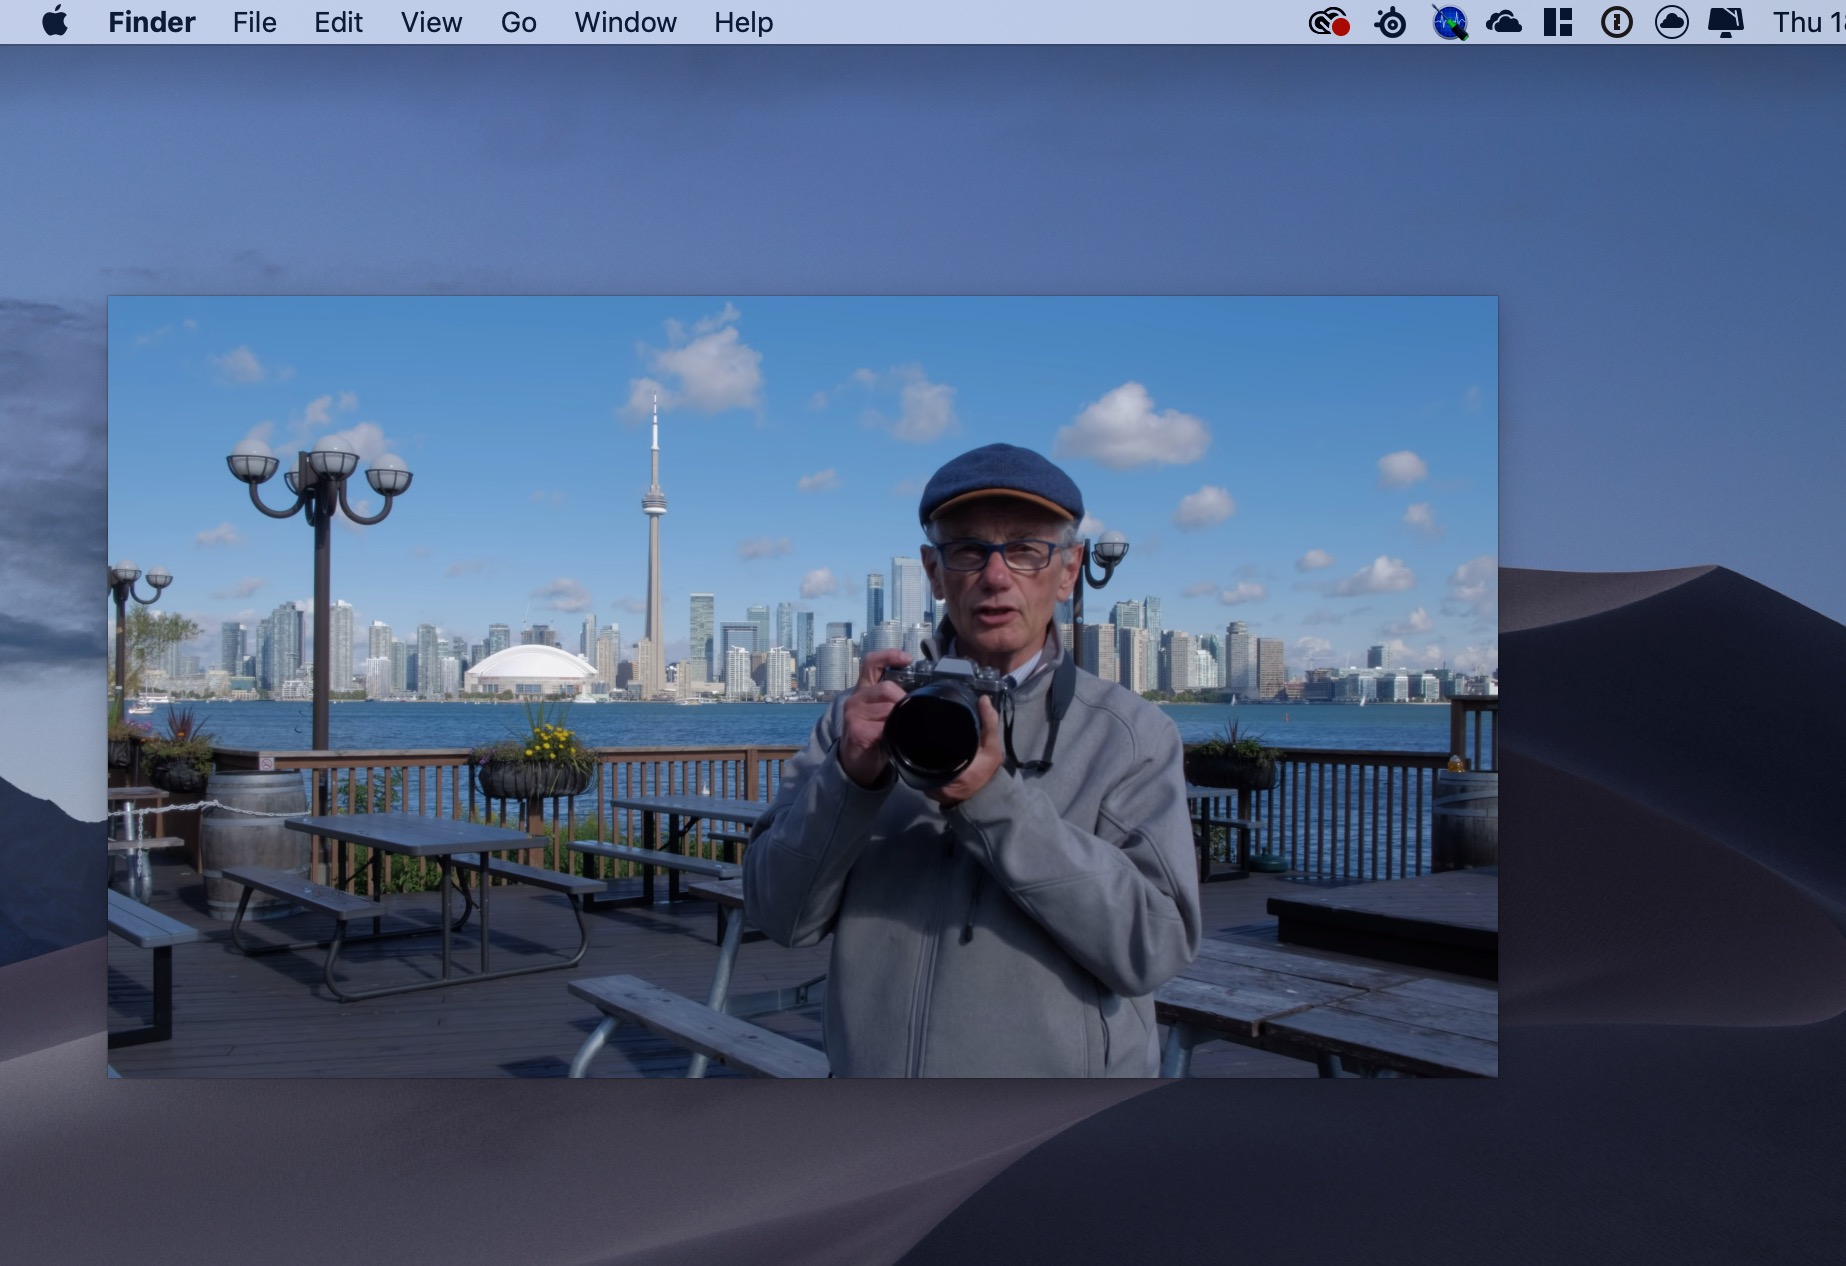 Chrome 70 cập nhật - giờ đã có thể dùng Picture in Picture trên Chrome